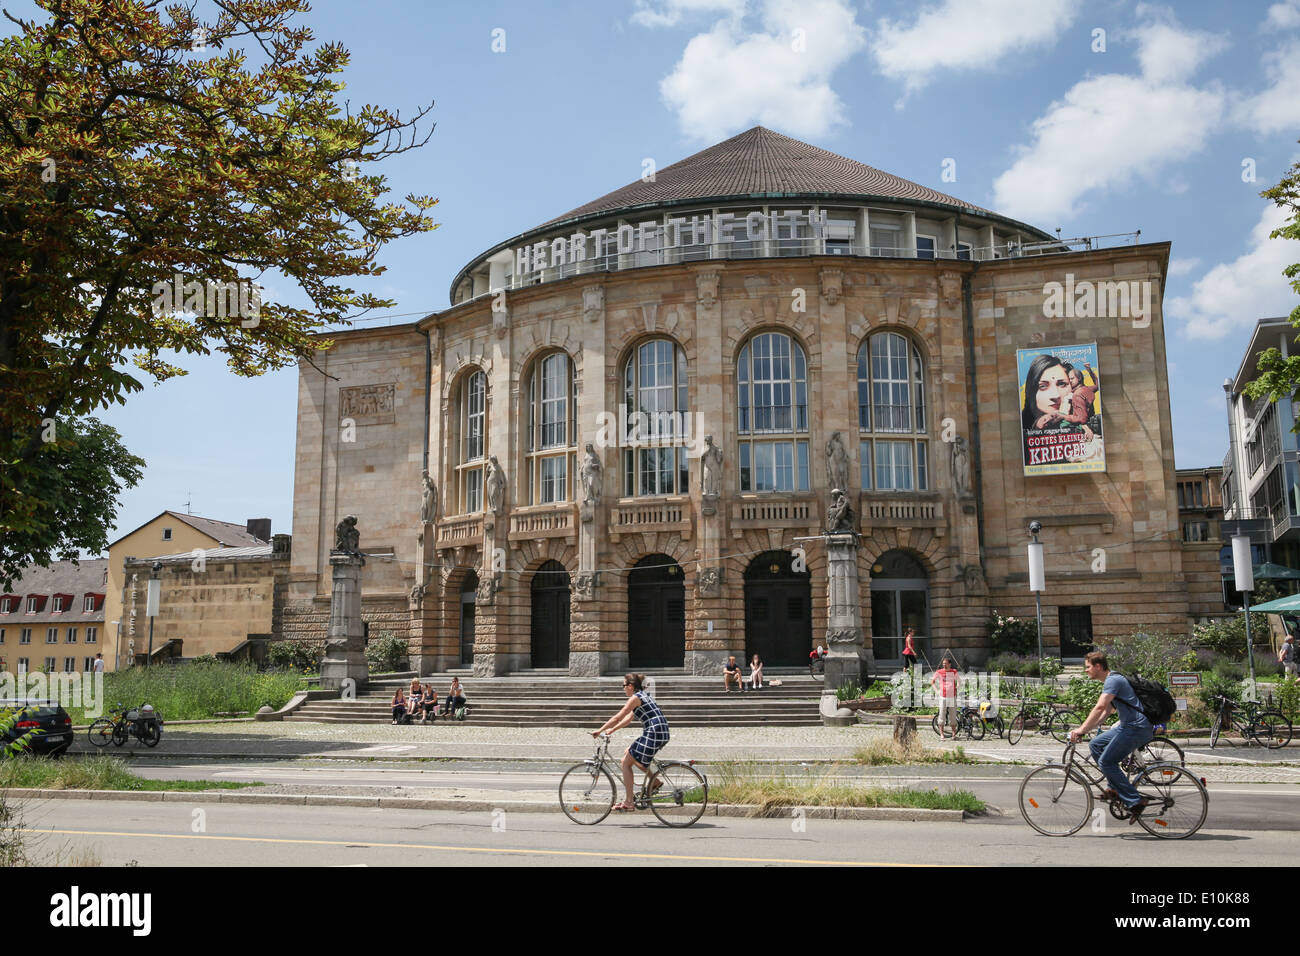 Teatro di Friburgo si trova nel centro di Freiburg im Breisgau, una città nella parte sud-occidentale della Germania. Foto Stock